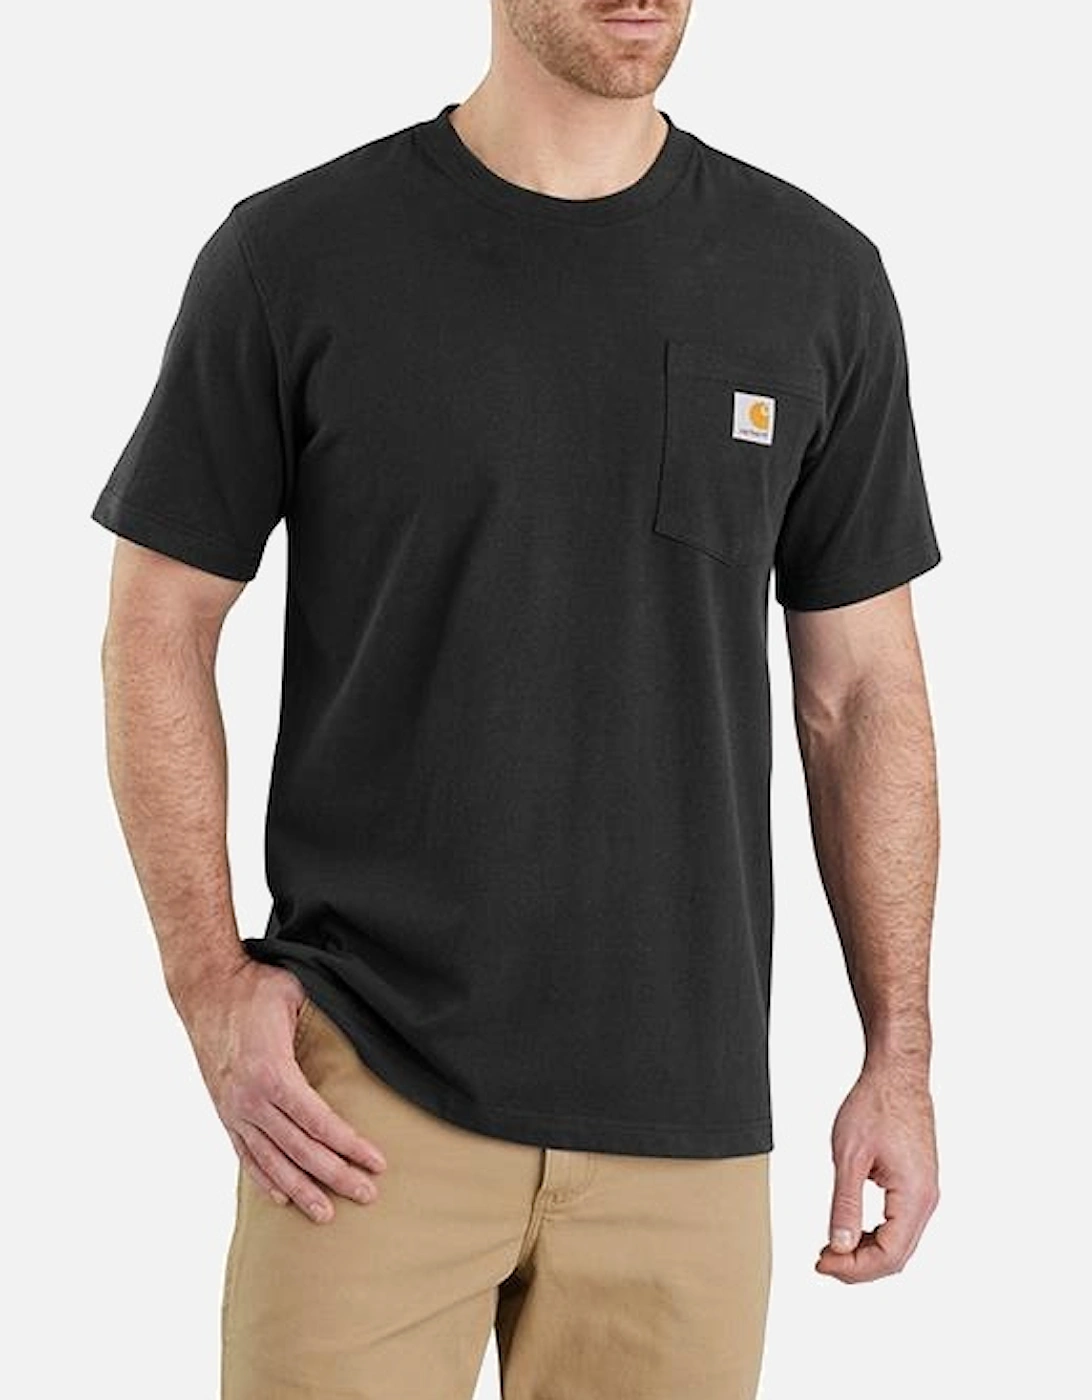 Carhartt Relaxed Fit Heavyweight Short-Sleeve K87 Pocket T-Shirt Black